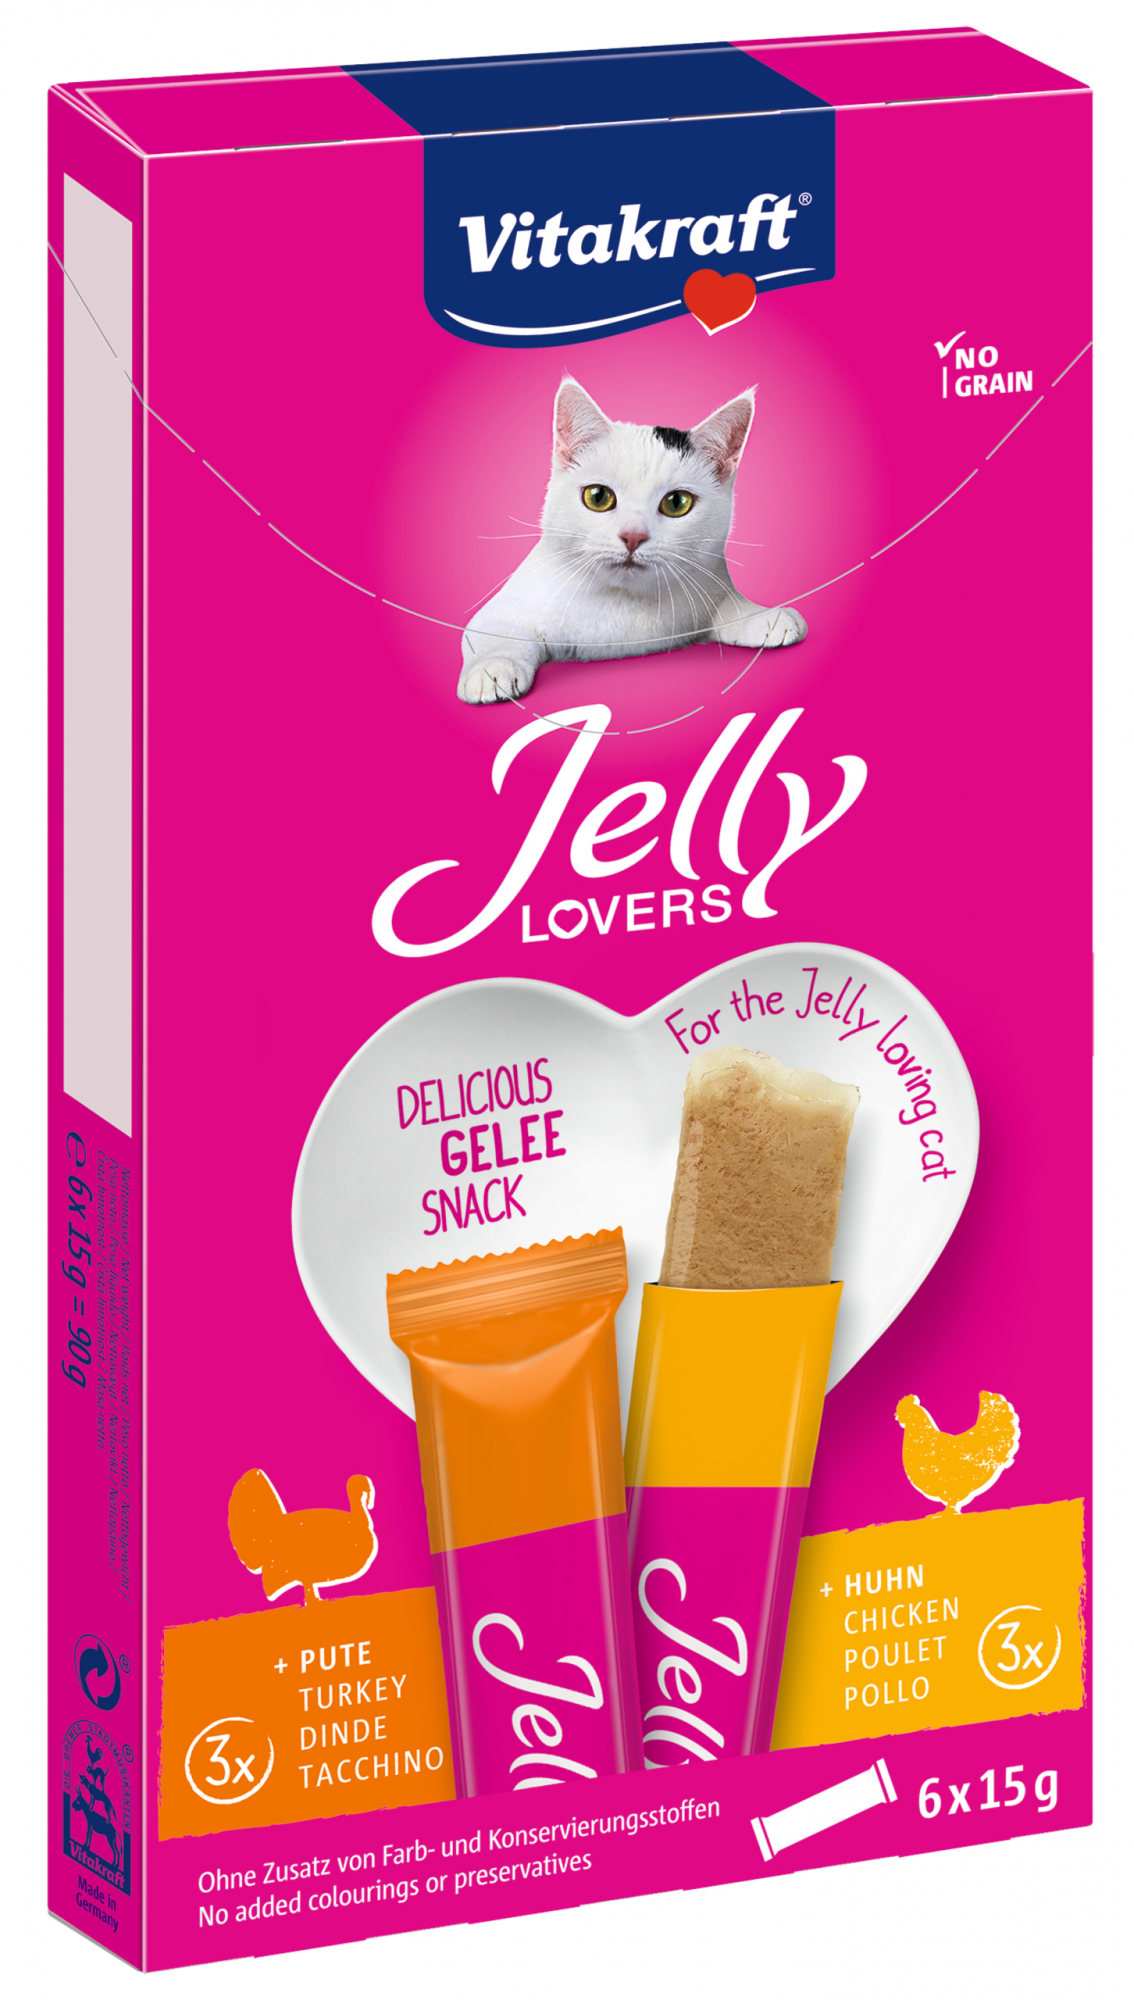 Vitakraft Jelly Lovers Snack per gatti - diversi sapori disponibili